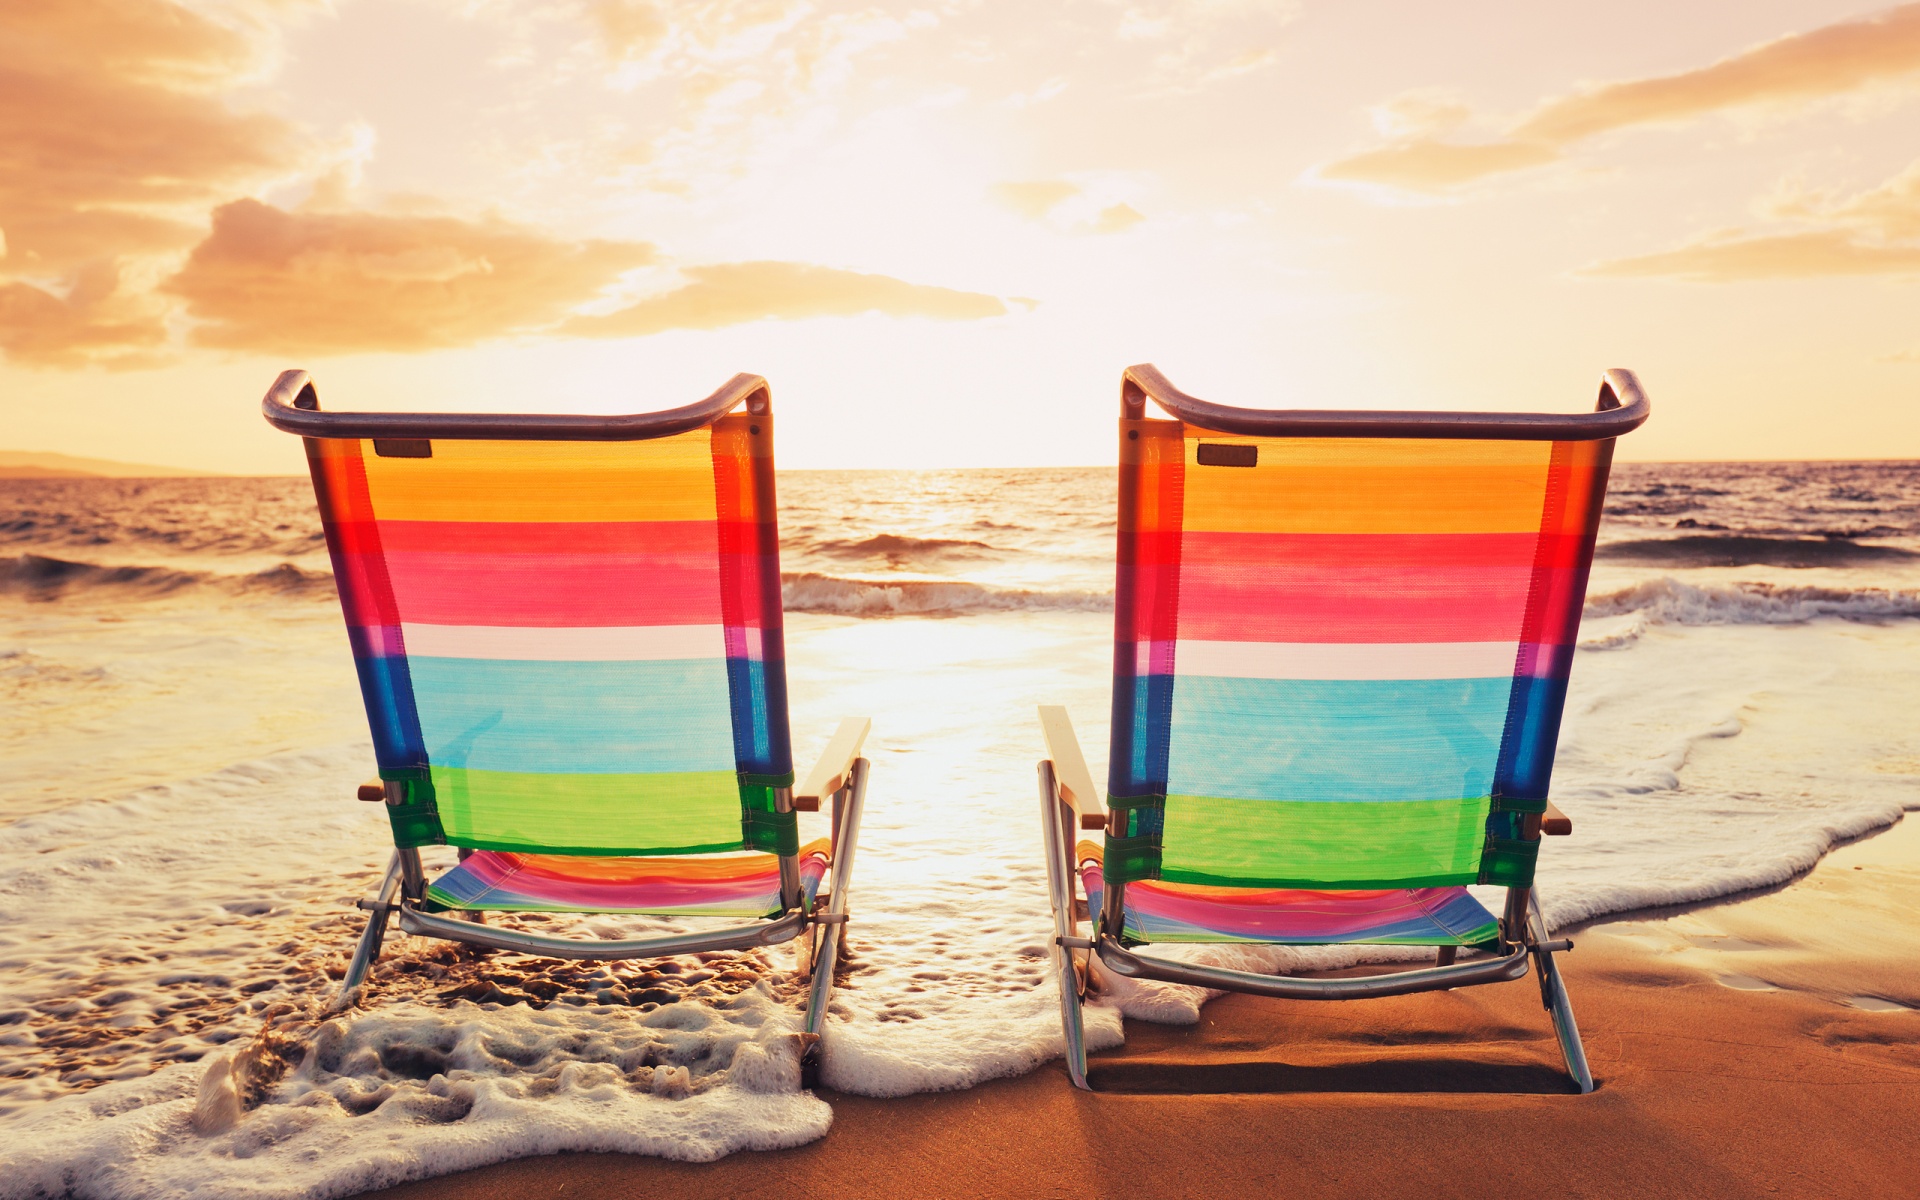 [44+] Summer Beach Chairs Desktop Wallpaper | WallpaperSafari.com